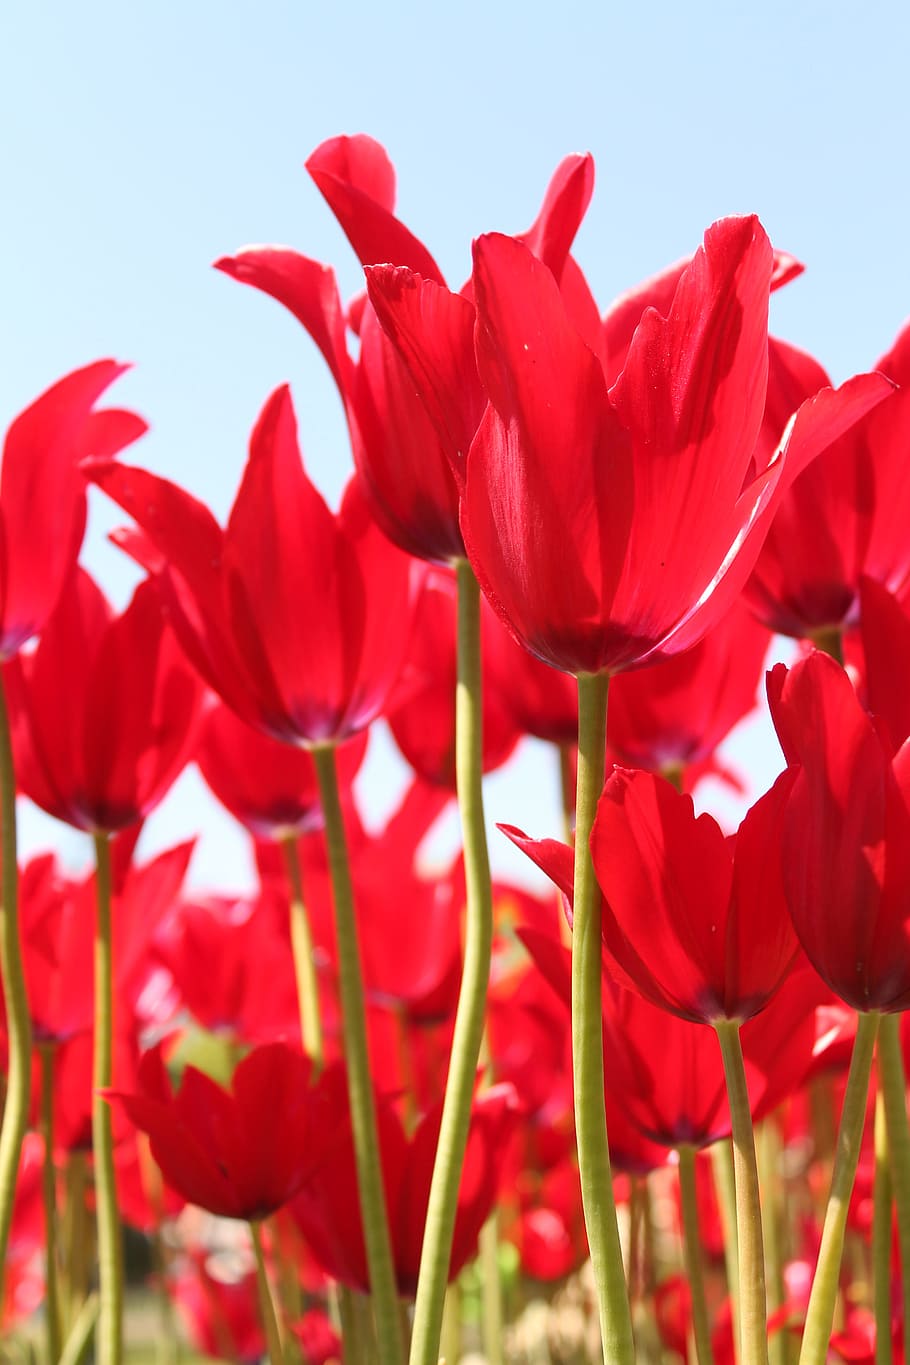 rojo, festival de flores de tulipán, tulipán, festival, flor, granja, flores, planta floreciendo, belleza en la naturaleza, vulnerabilidad